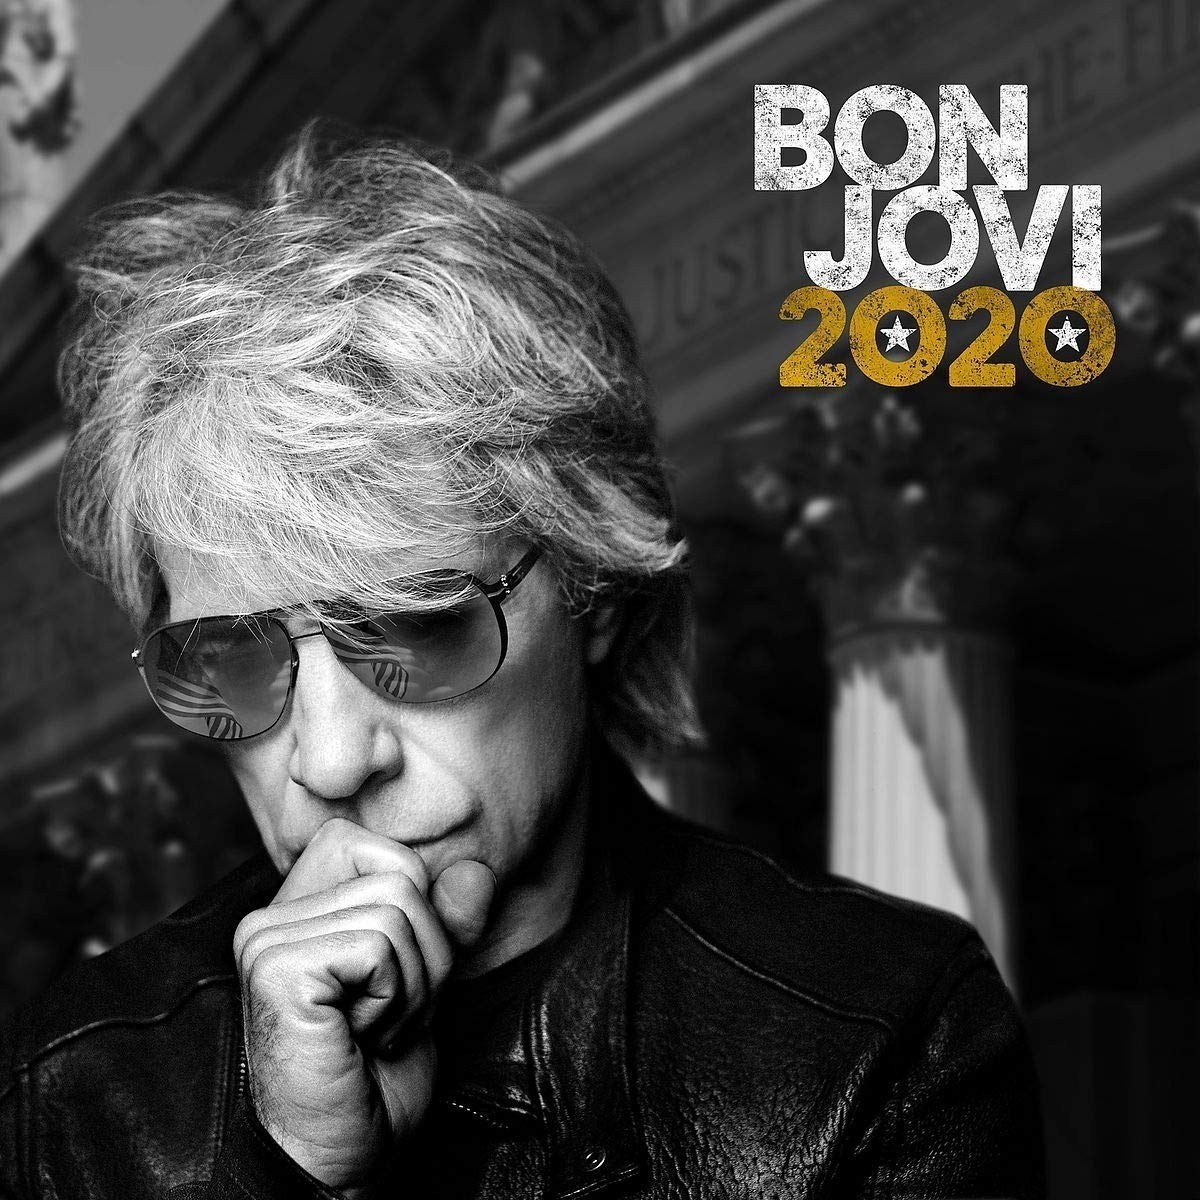 Bon Jovi - Bon Jovi 2020 2XLP Gold Vinyl